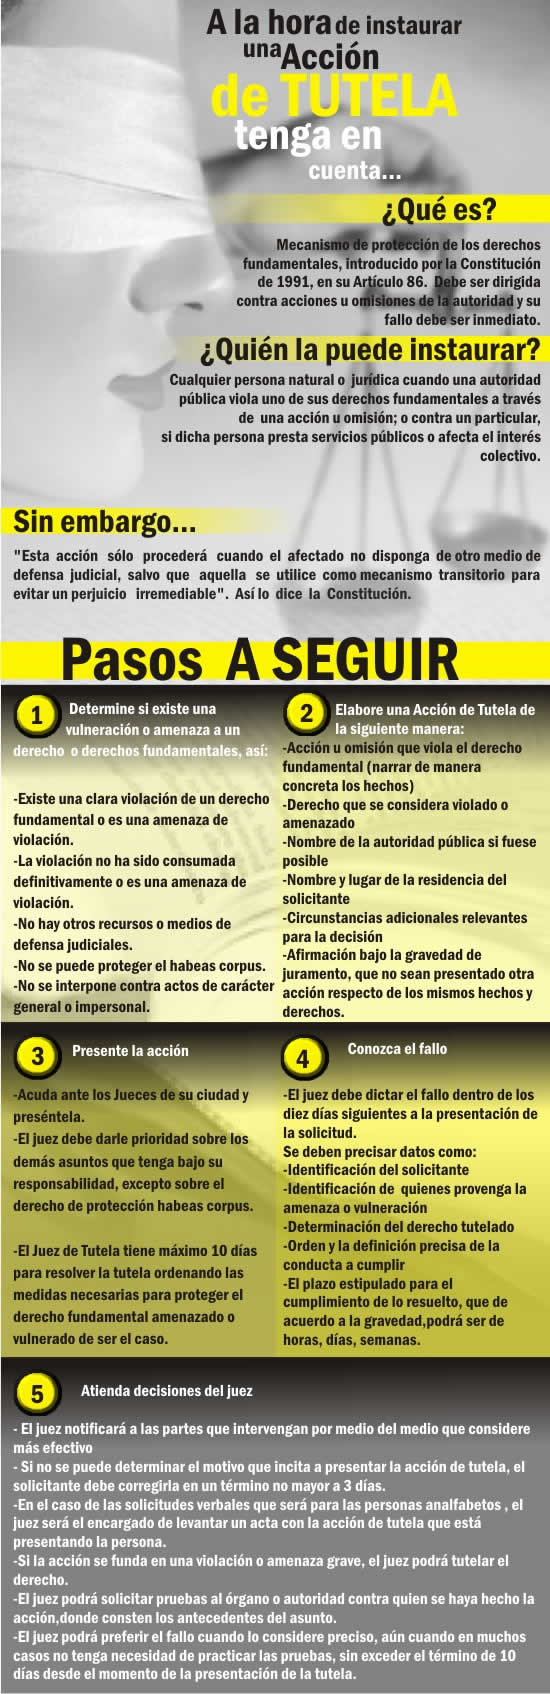 Tabla De Liquidacion De Prestaciones Sociales 2011 Colombia